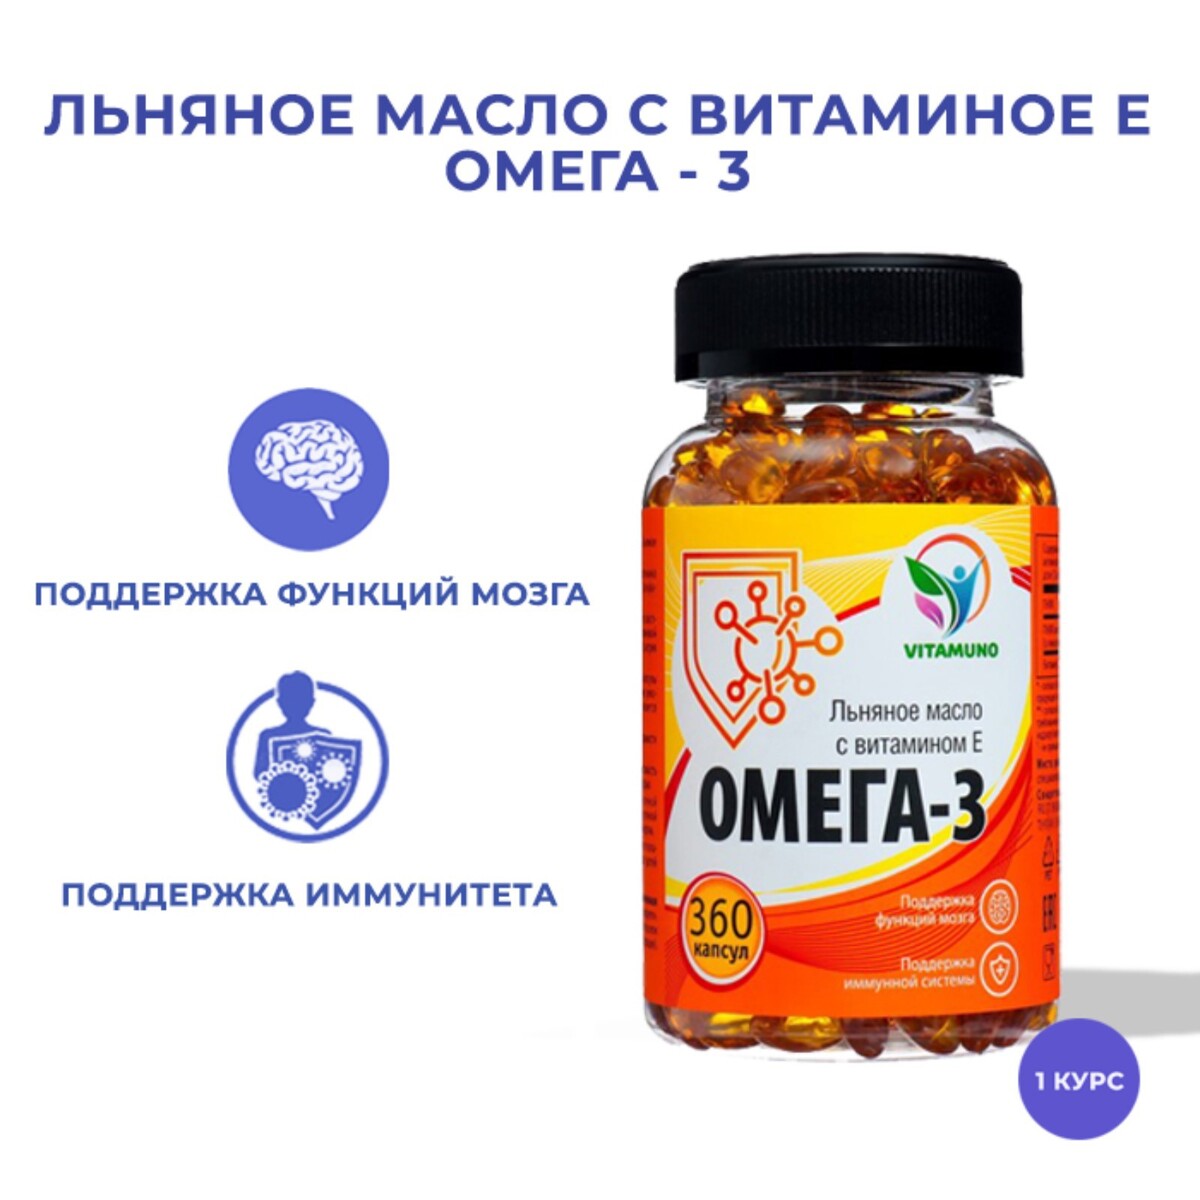 Омега-3 льняное масло с витамином е, 360 капсул по 350 мг Vitamuno 08129615 - фото 1